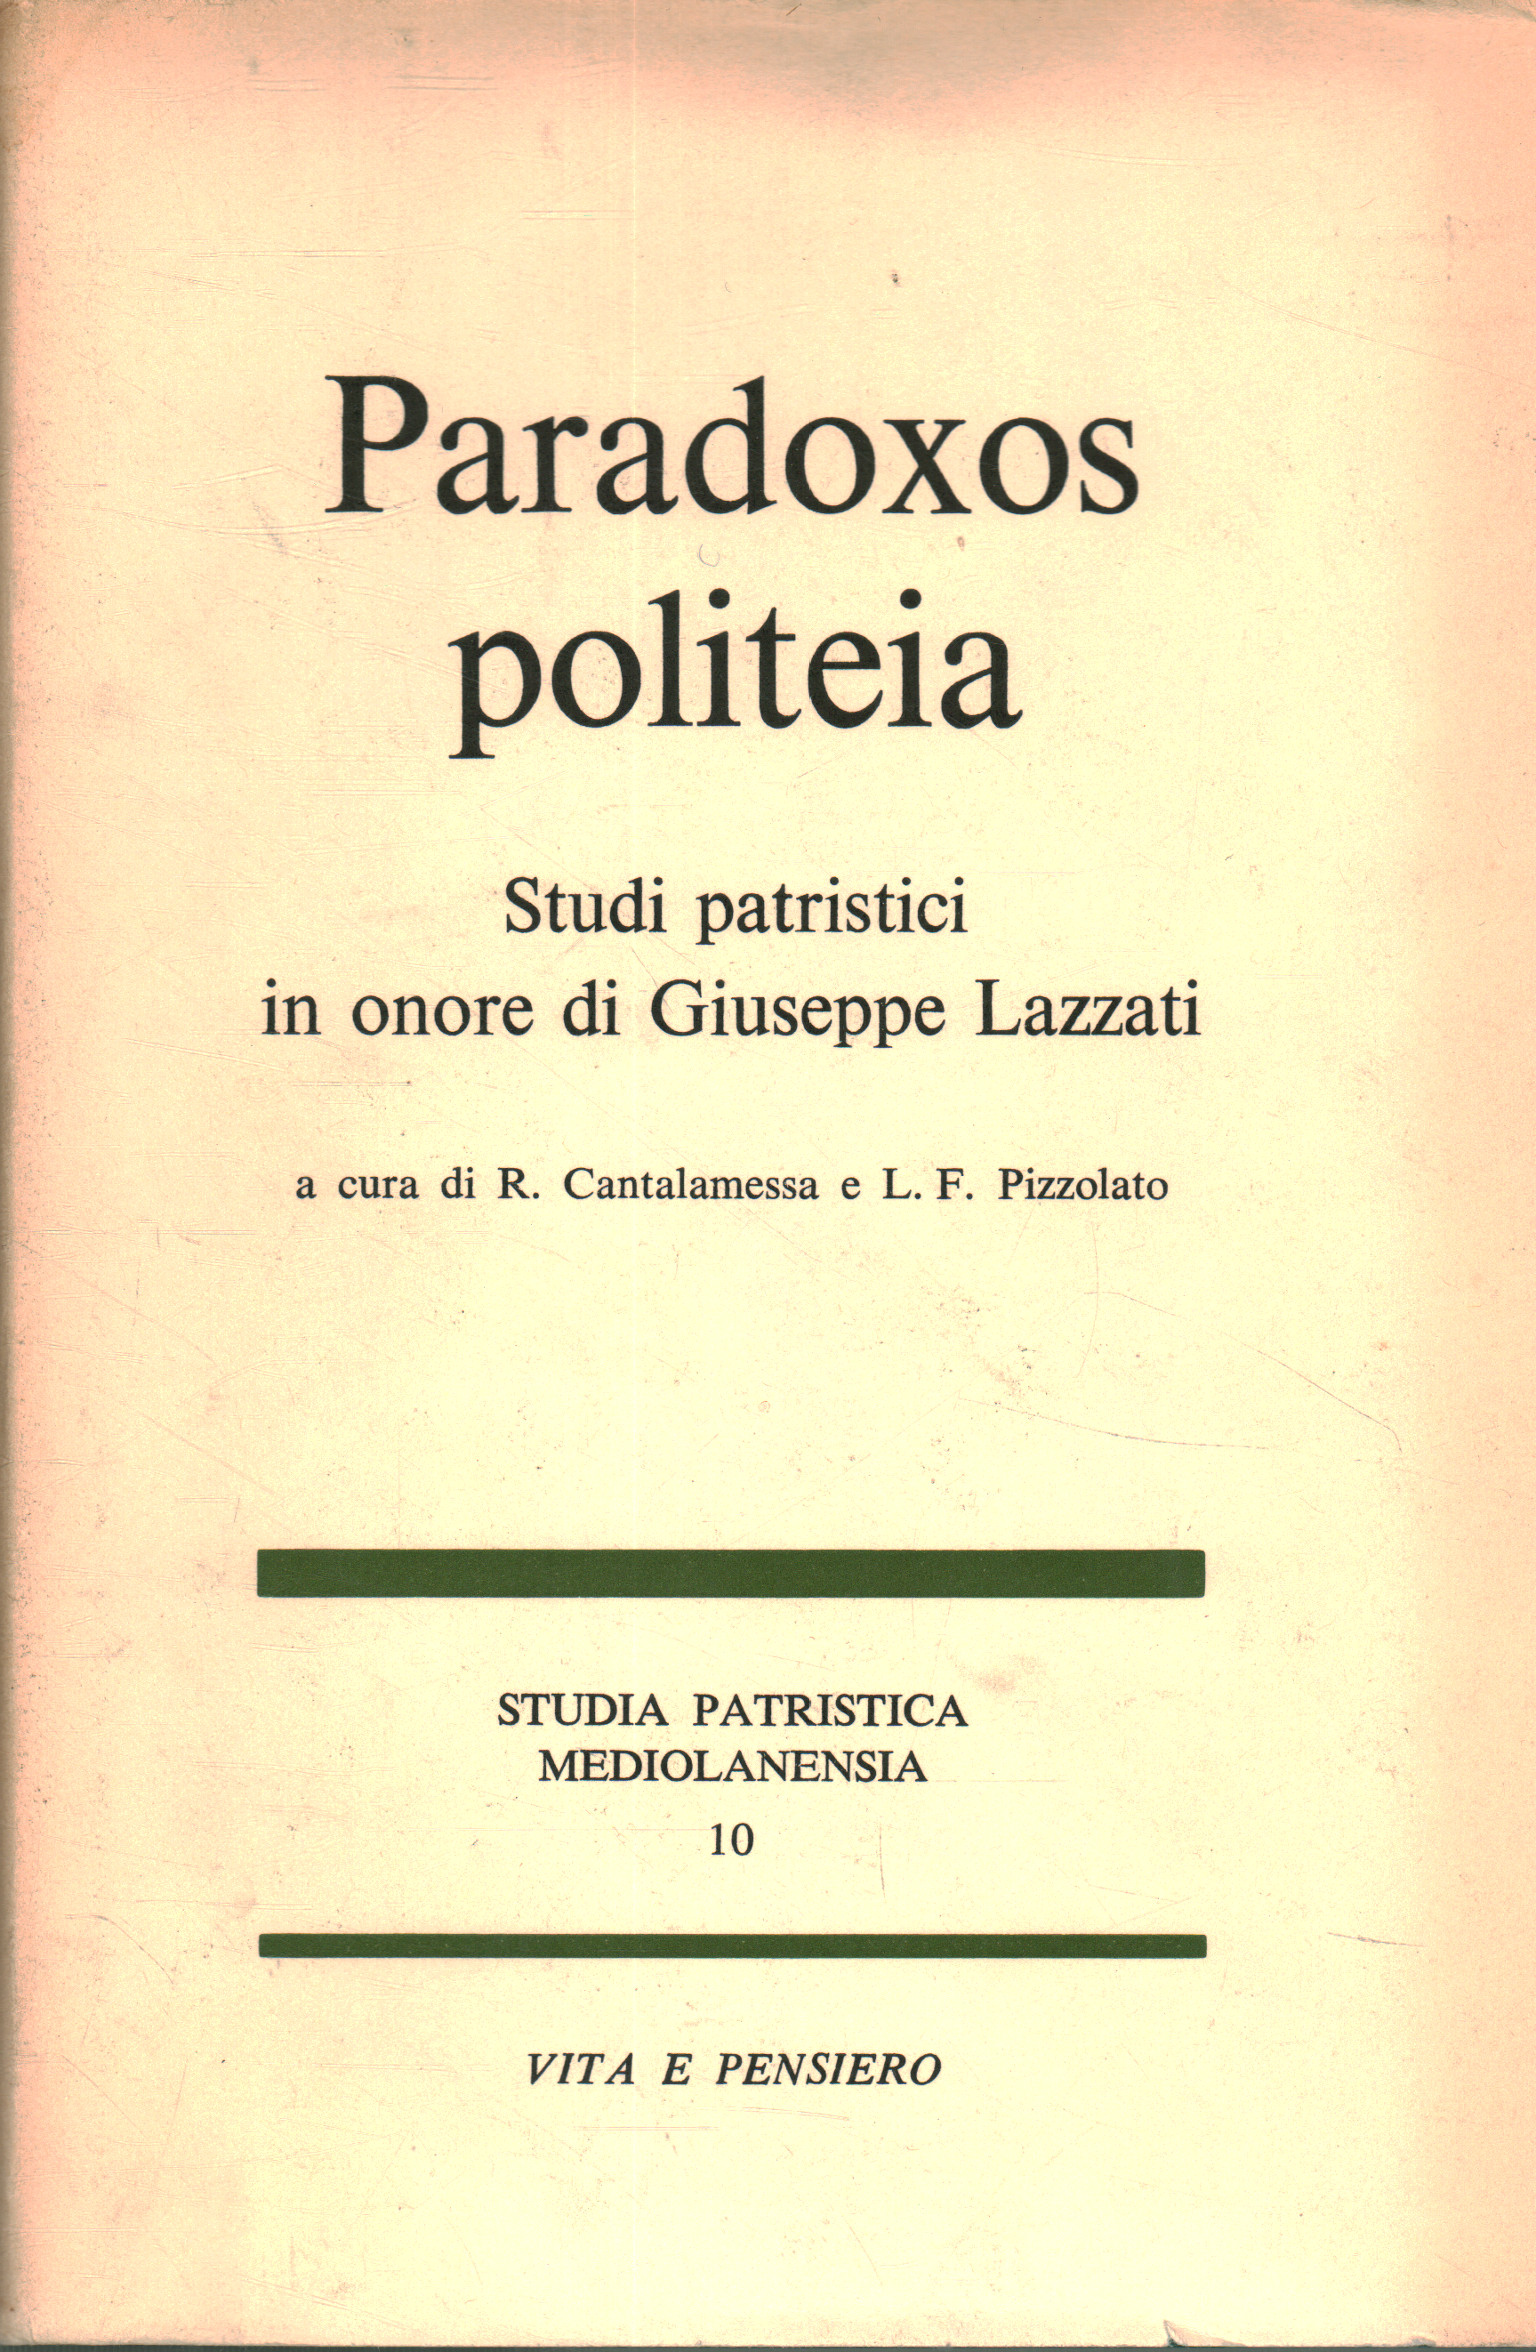 Paradoxox Politeia. Patristische Studien zu Ehren von G, R. Cantalamessa L.F. Pizzolato